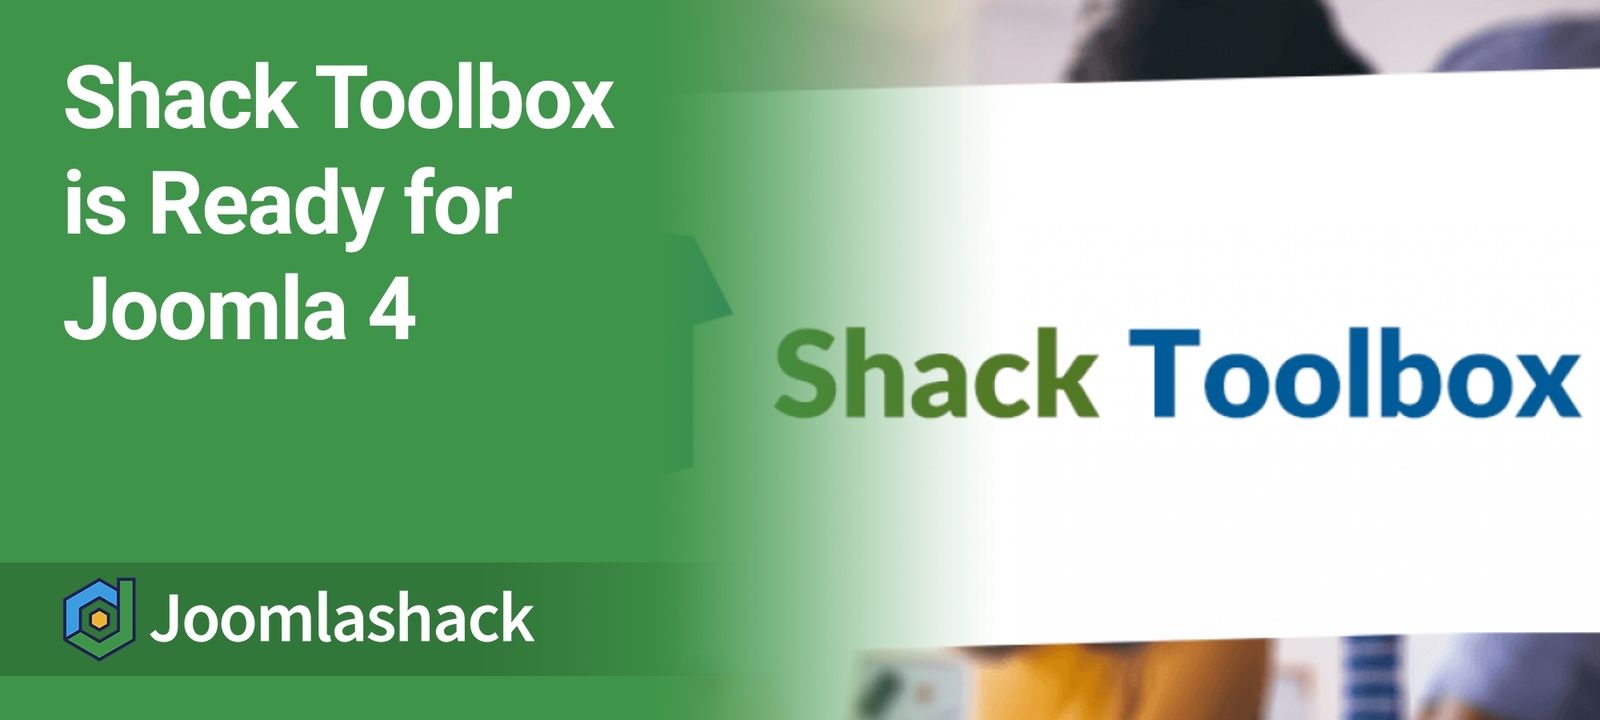  Shack Toolbox is Ready for Joomla 4